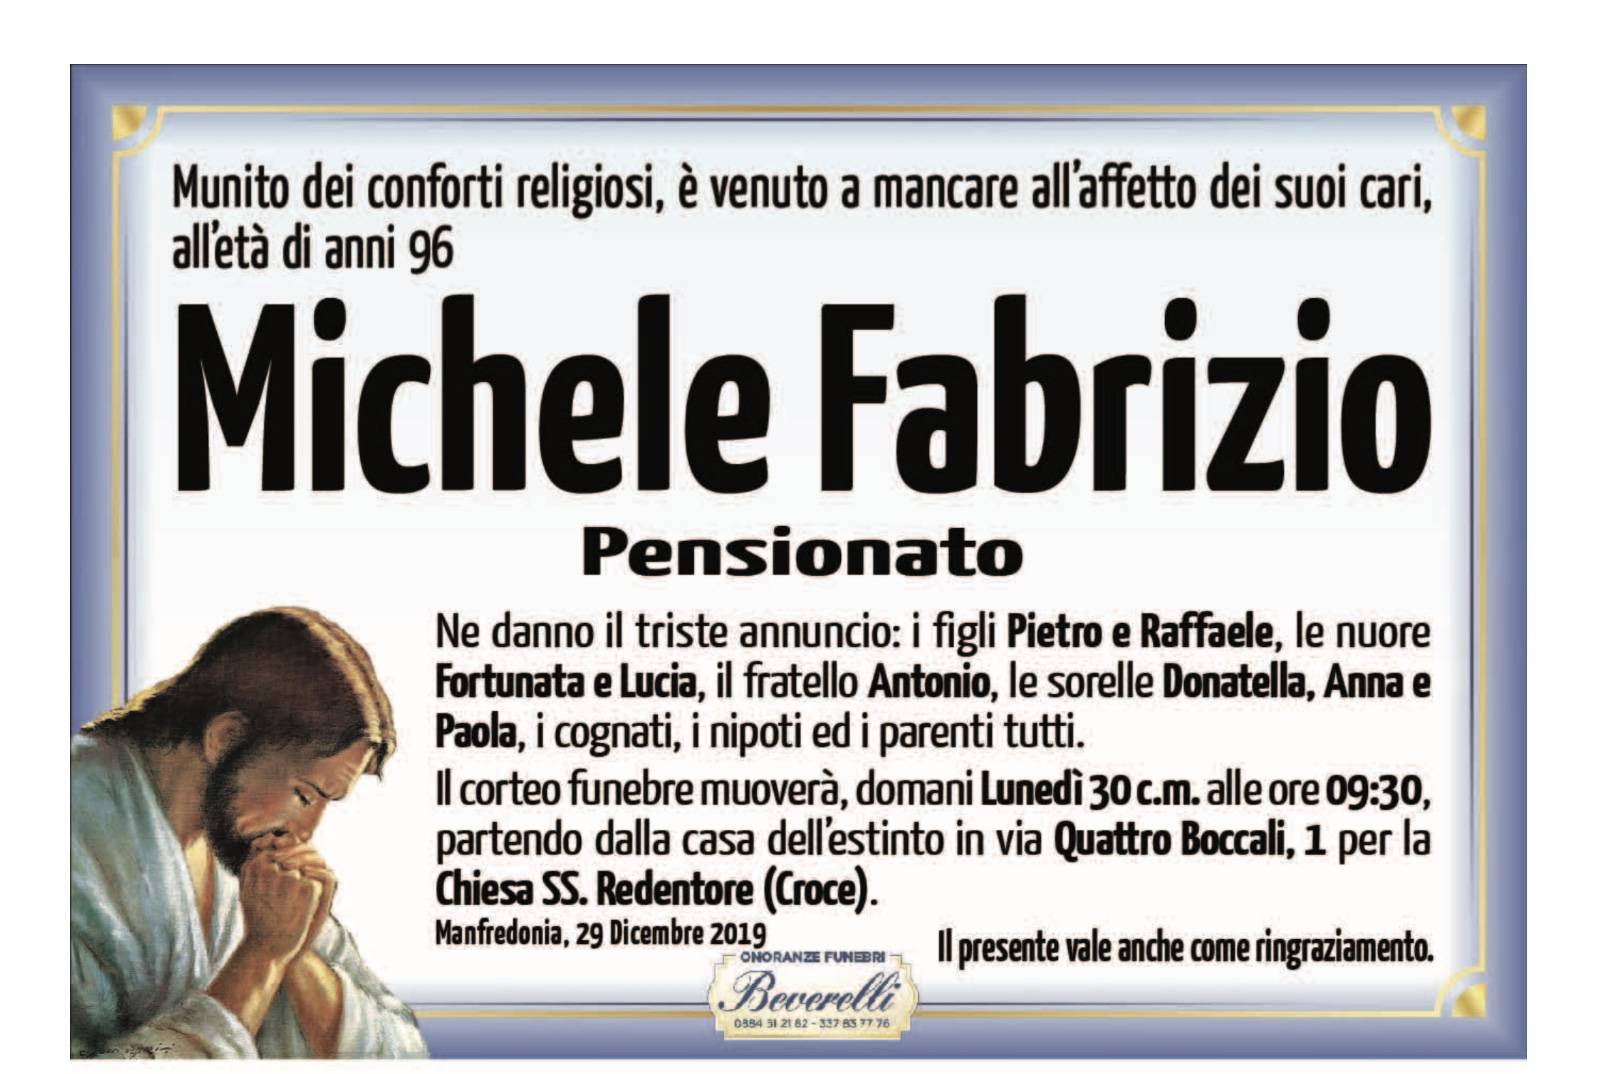 Michele Fabrizio